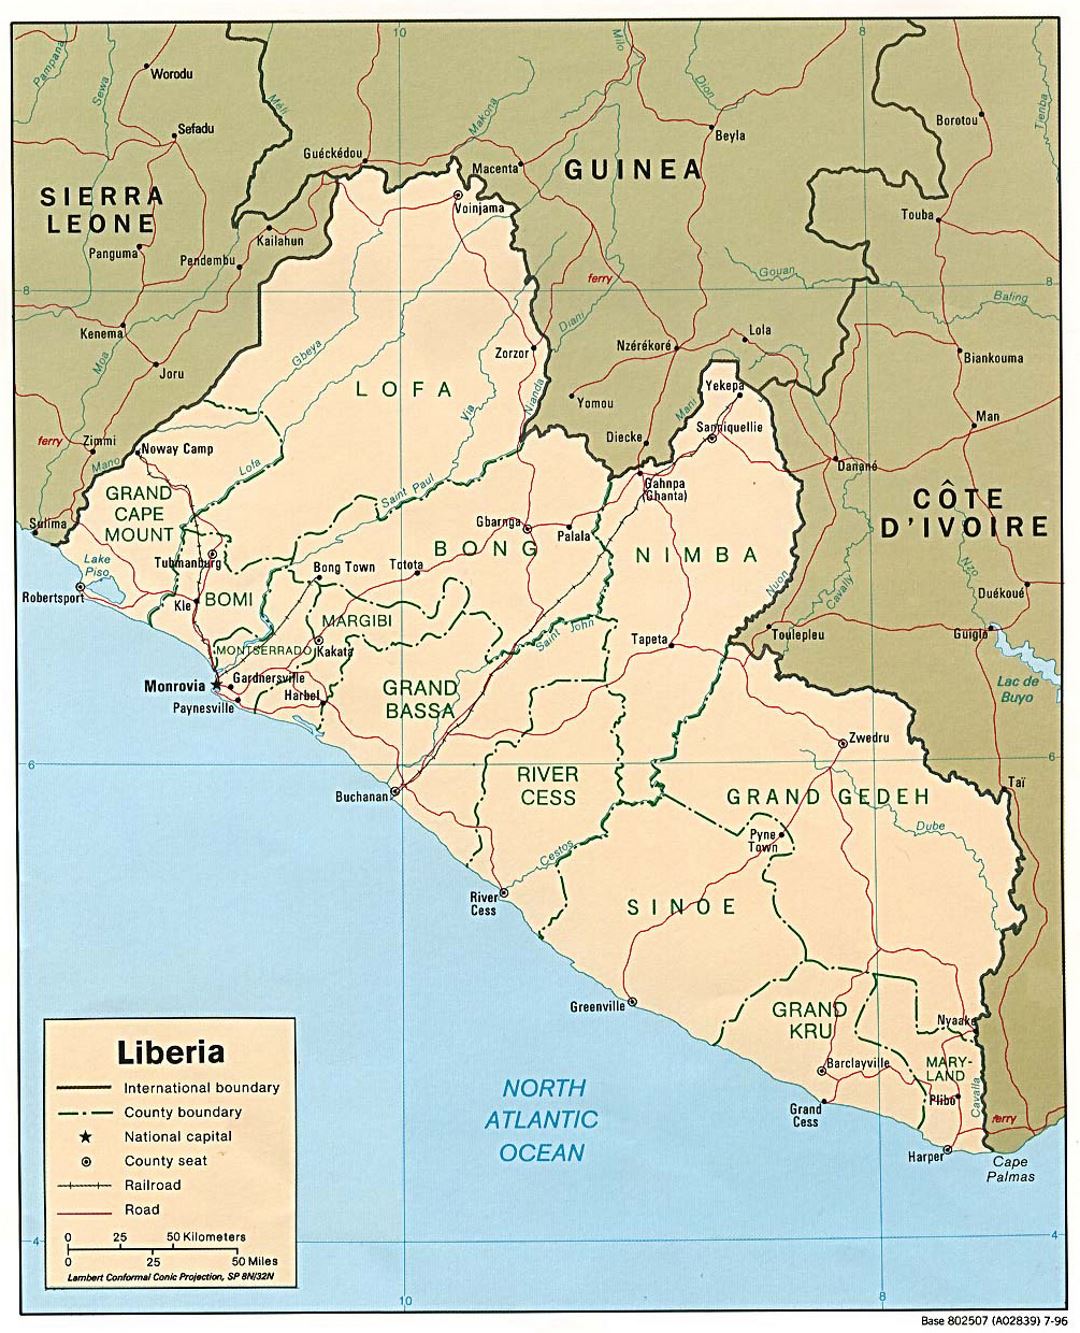 Детальная политическая и административная карта Либерии с дорогами, железными дорогами и крупными городами - 1996